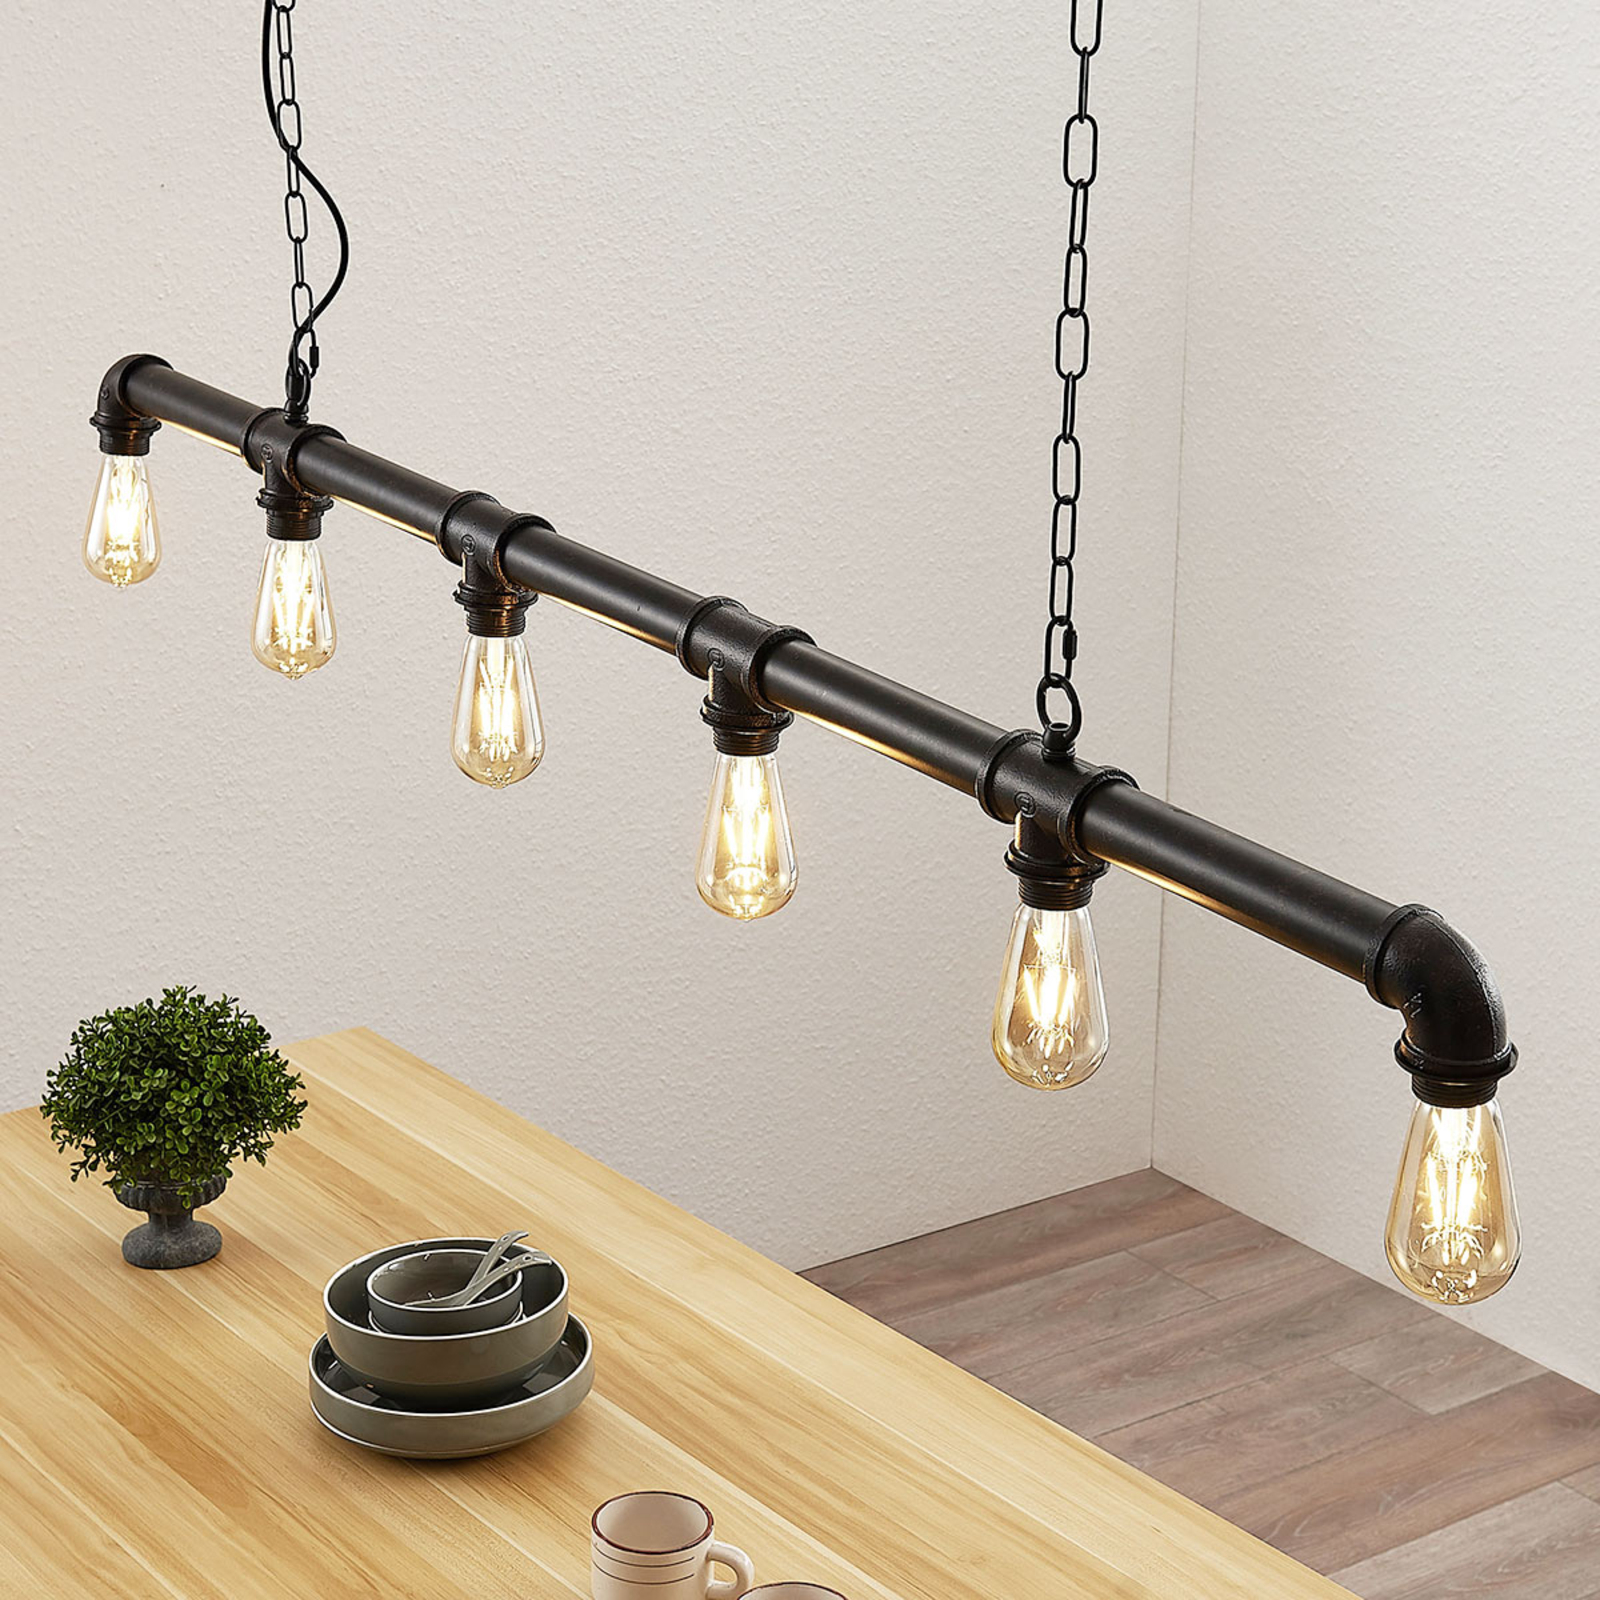 eiwit vooroordeel stil Balk hanglamp Josip in industriële stijl | Lampen24.be